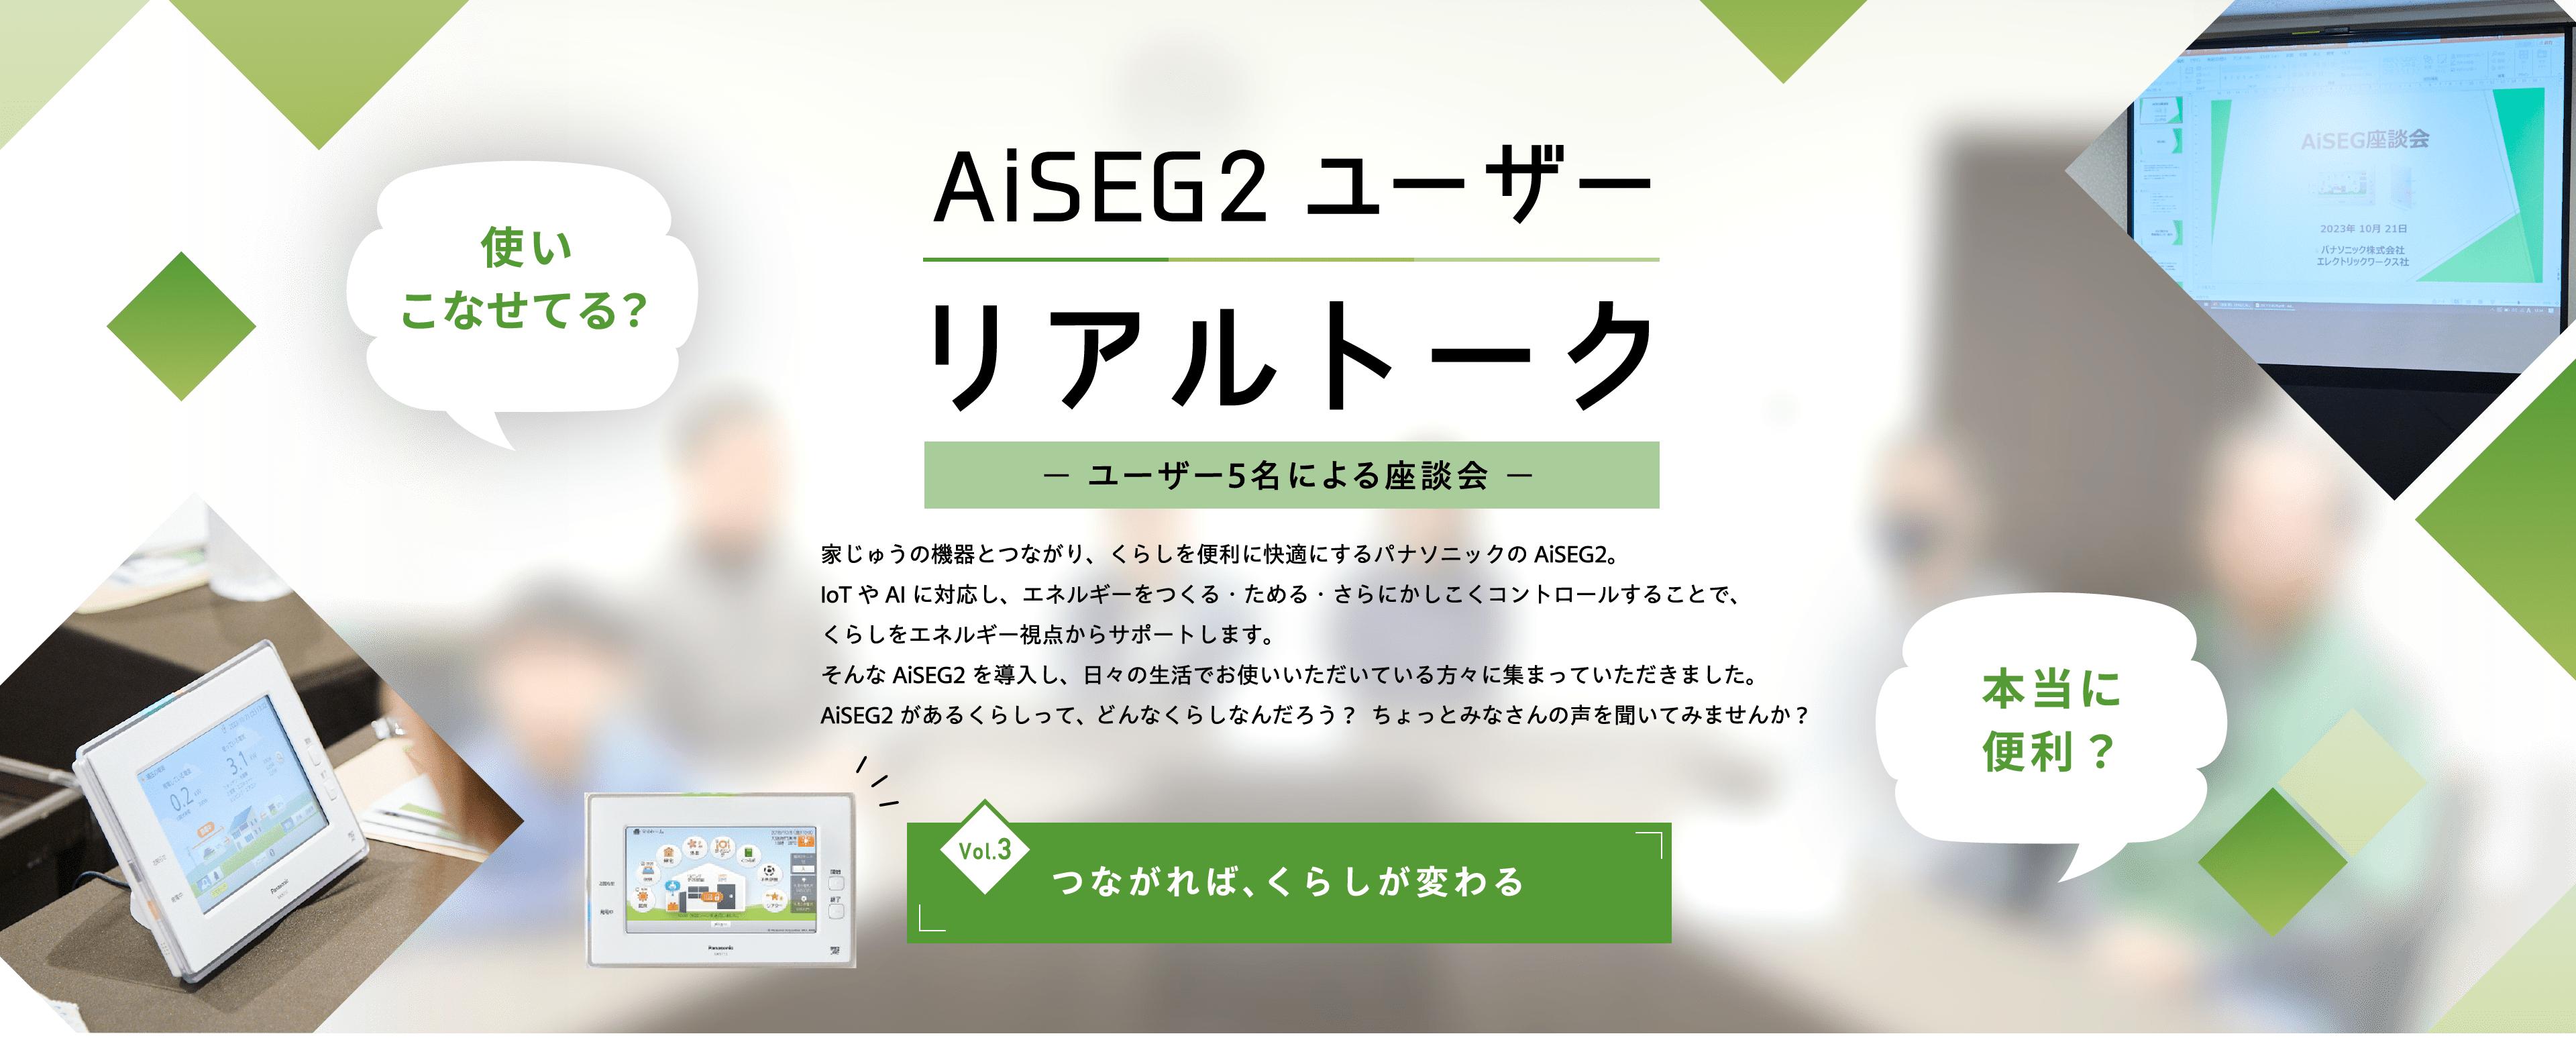 AiSEG2 ユーザー リアルトーク Vol3 つながれば、くらしが変わる